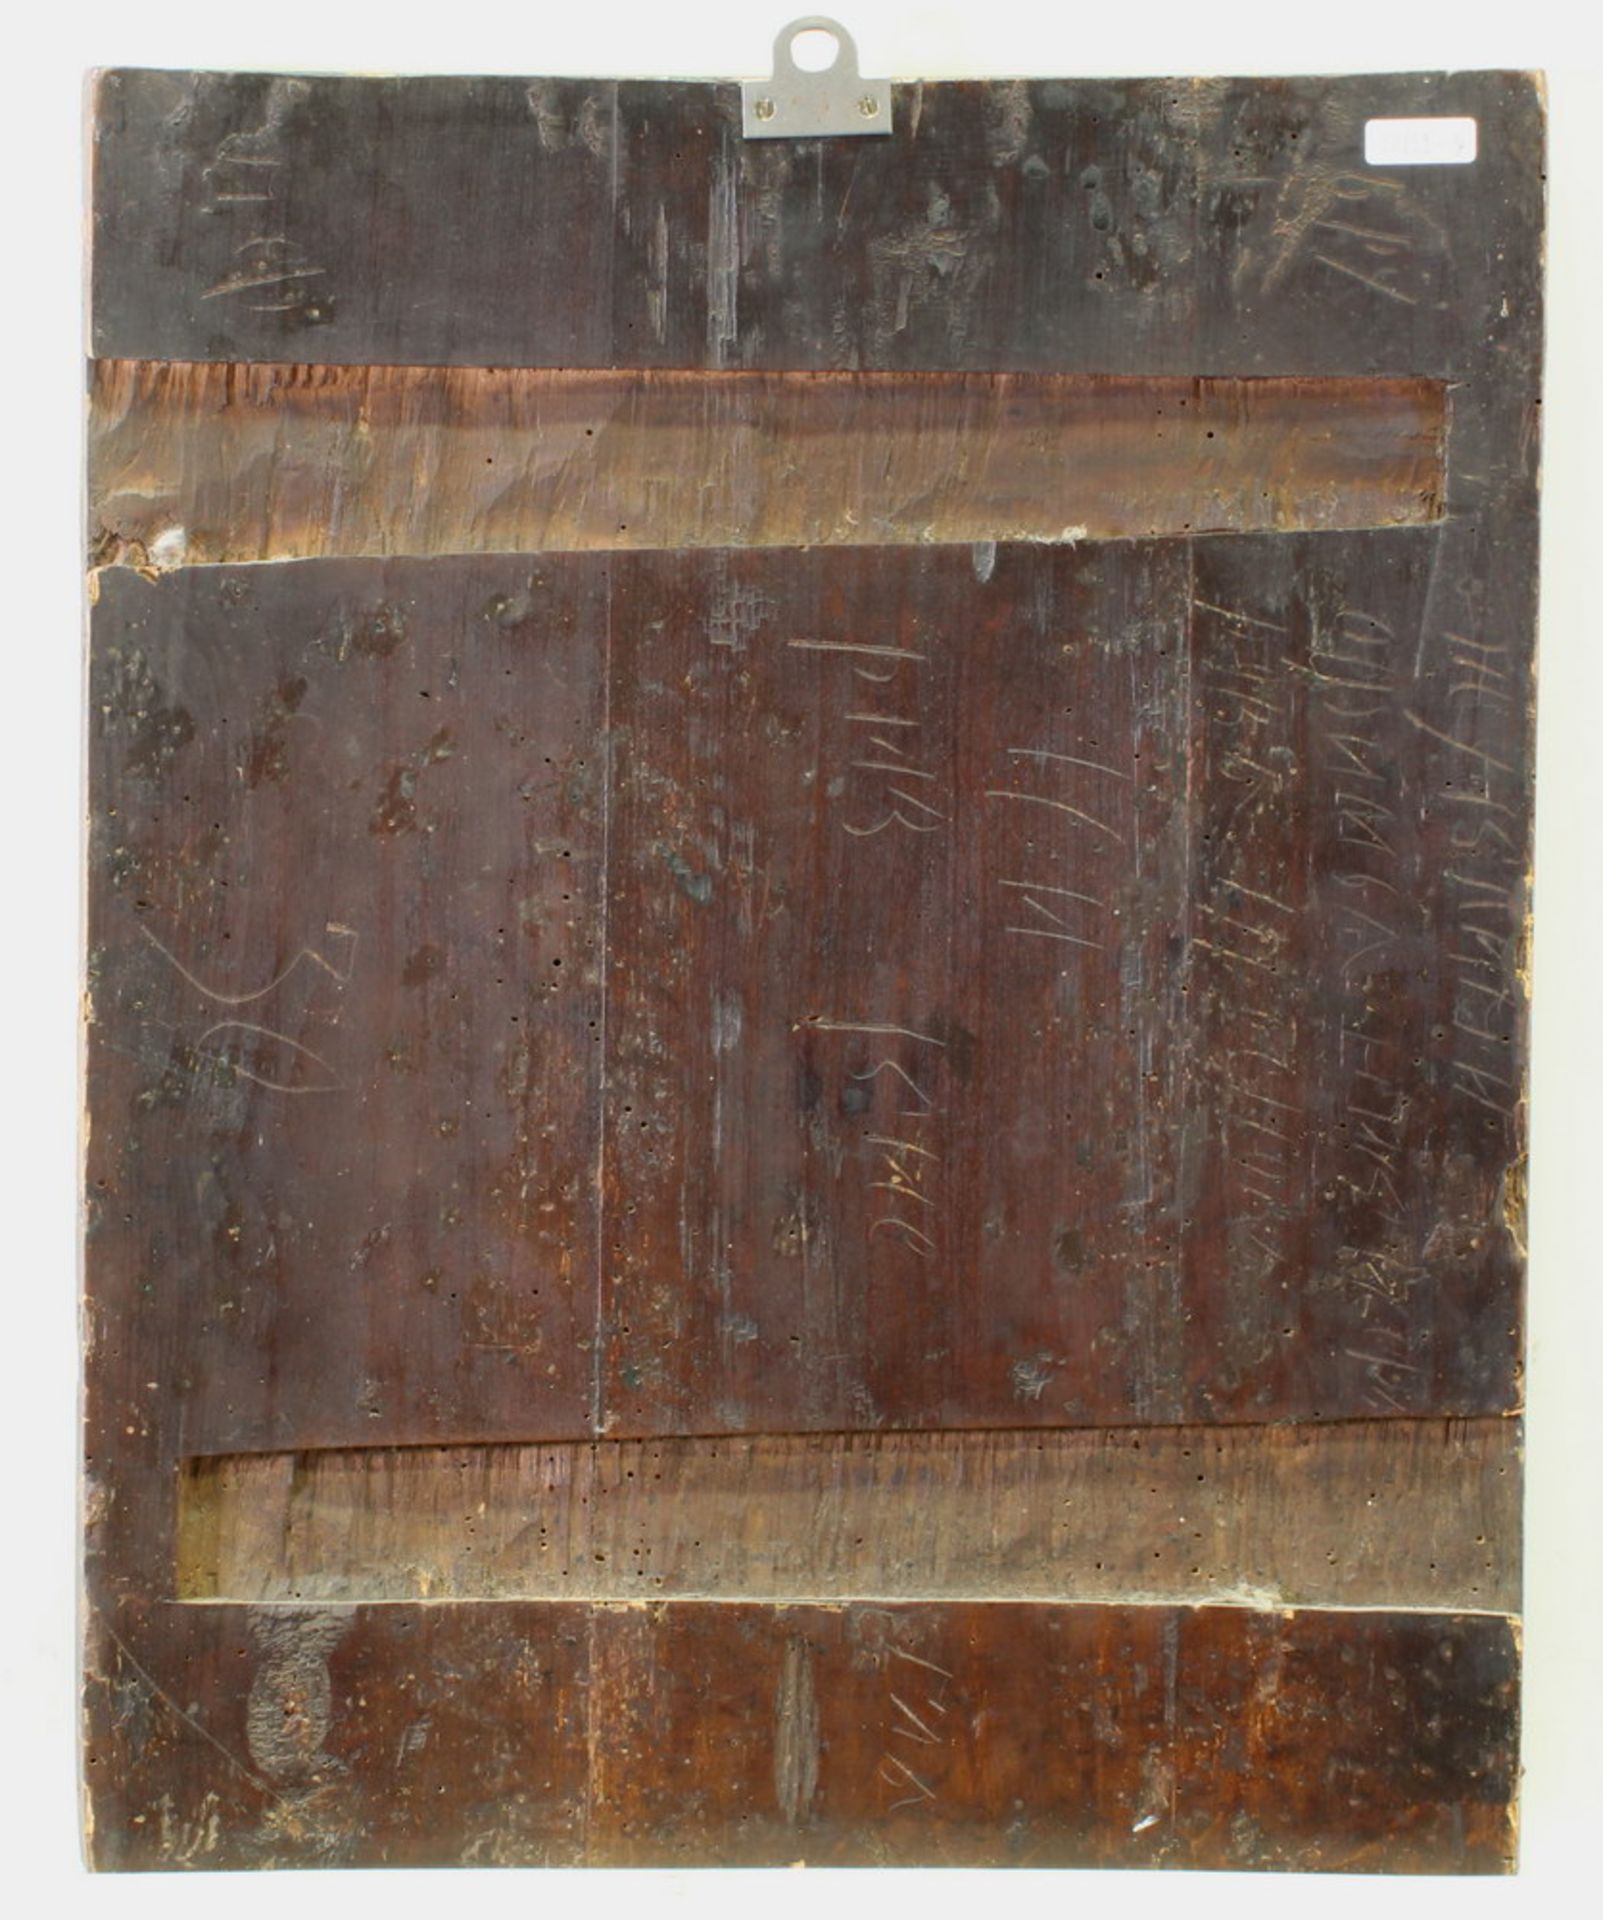 Festtagsikone, Tempera auf Holz, Russland, 19. Jh., 50 x 41 cm - Bild 7 aus 7